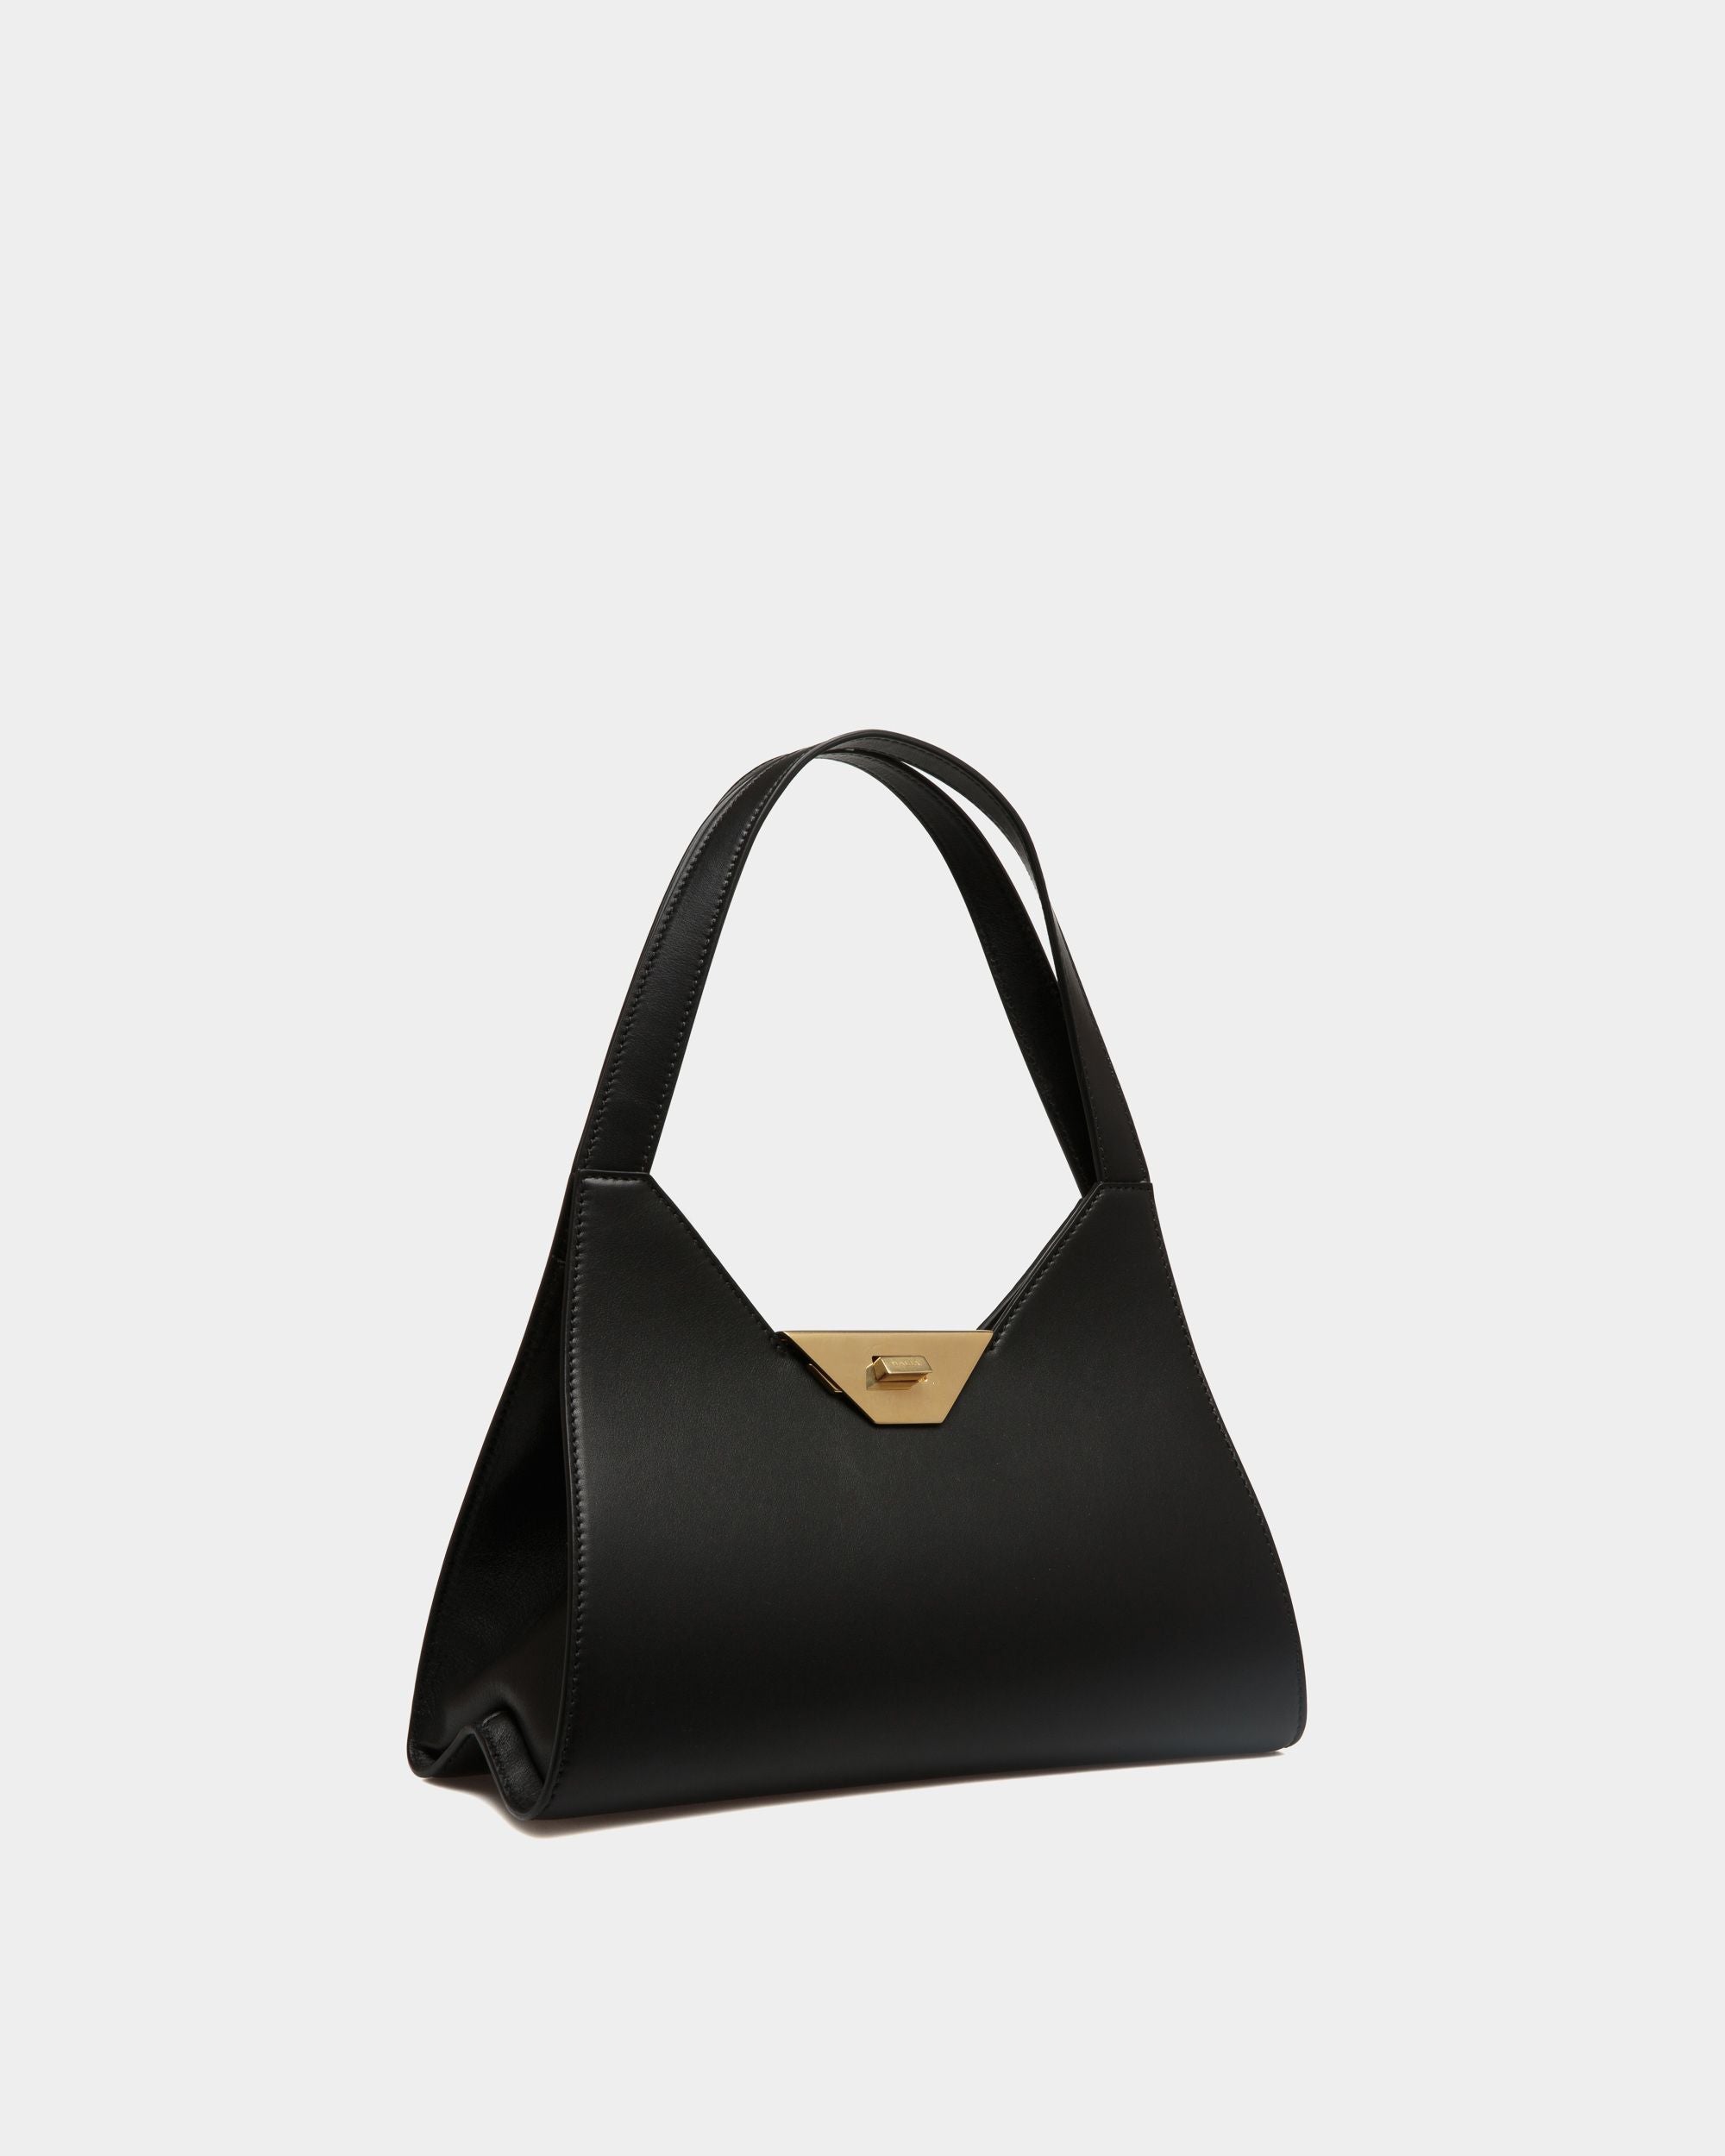 Tilt | Women's Shoulder Bag in Black Leather | Bally | Still Life 3/4 Front